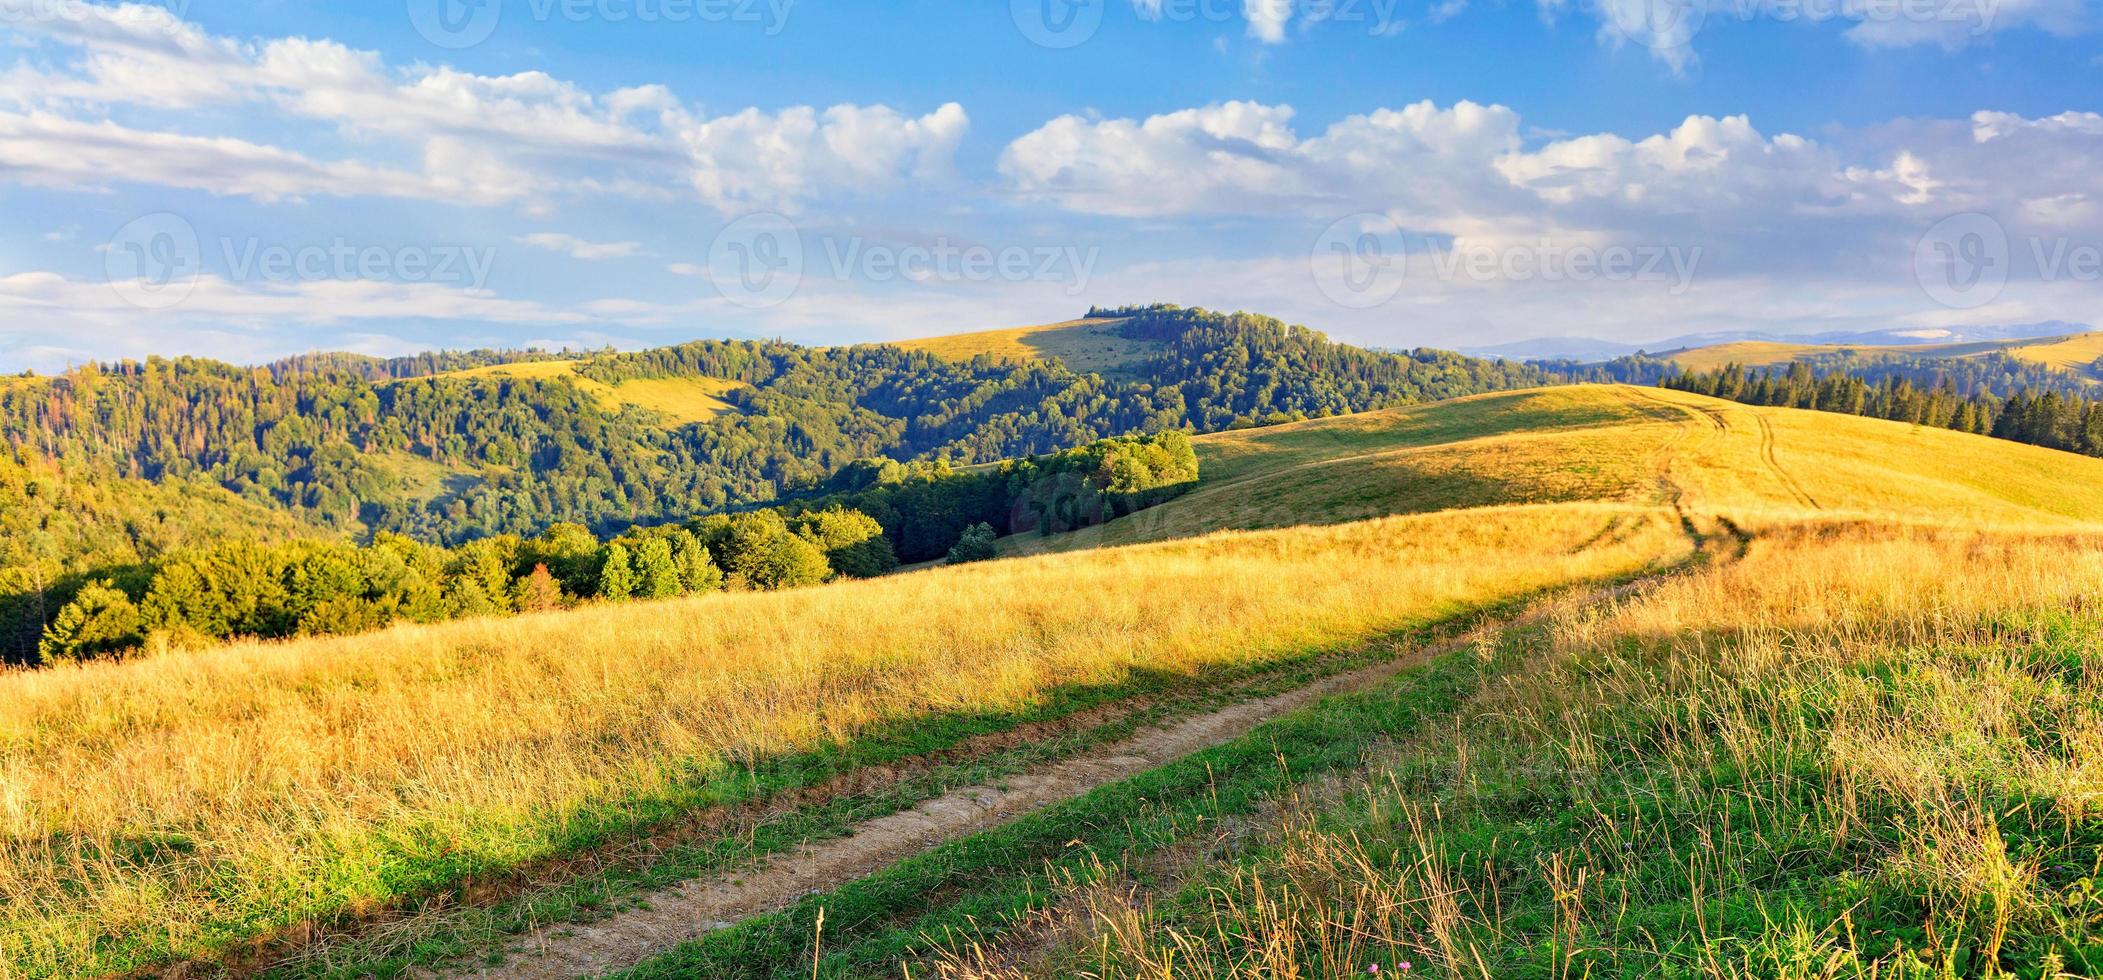 un chemin de terre traverse un chemin herbeux à travers les sommets des collines des Carpates, baigné de lumière dorée sous les rayons du soleil diurne. photo